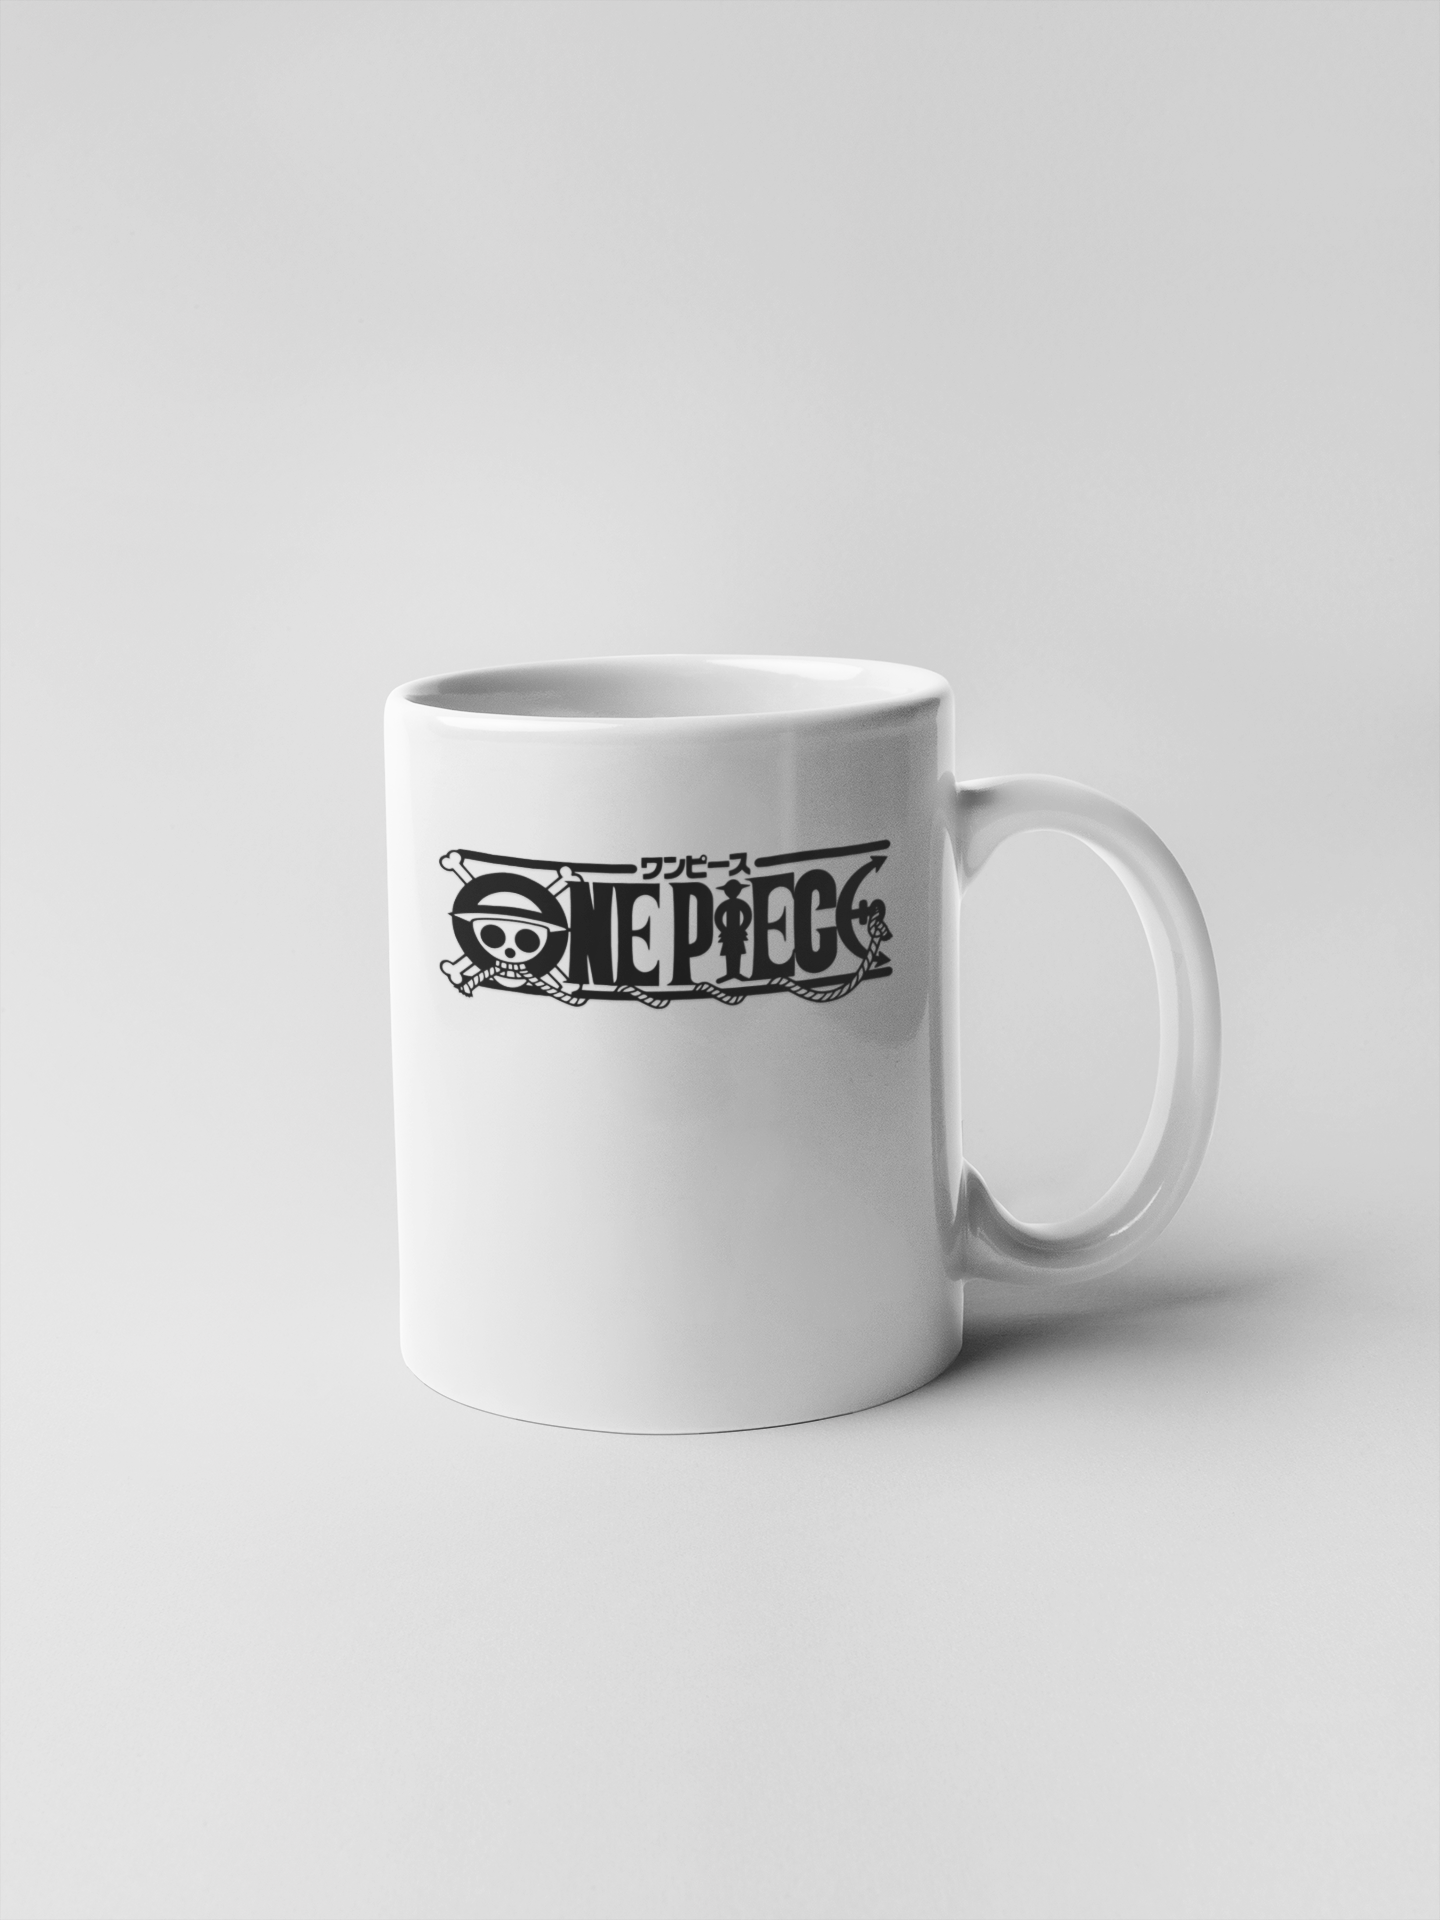 One Piece Ceramic Coffee Mugs